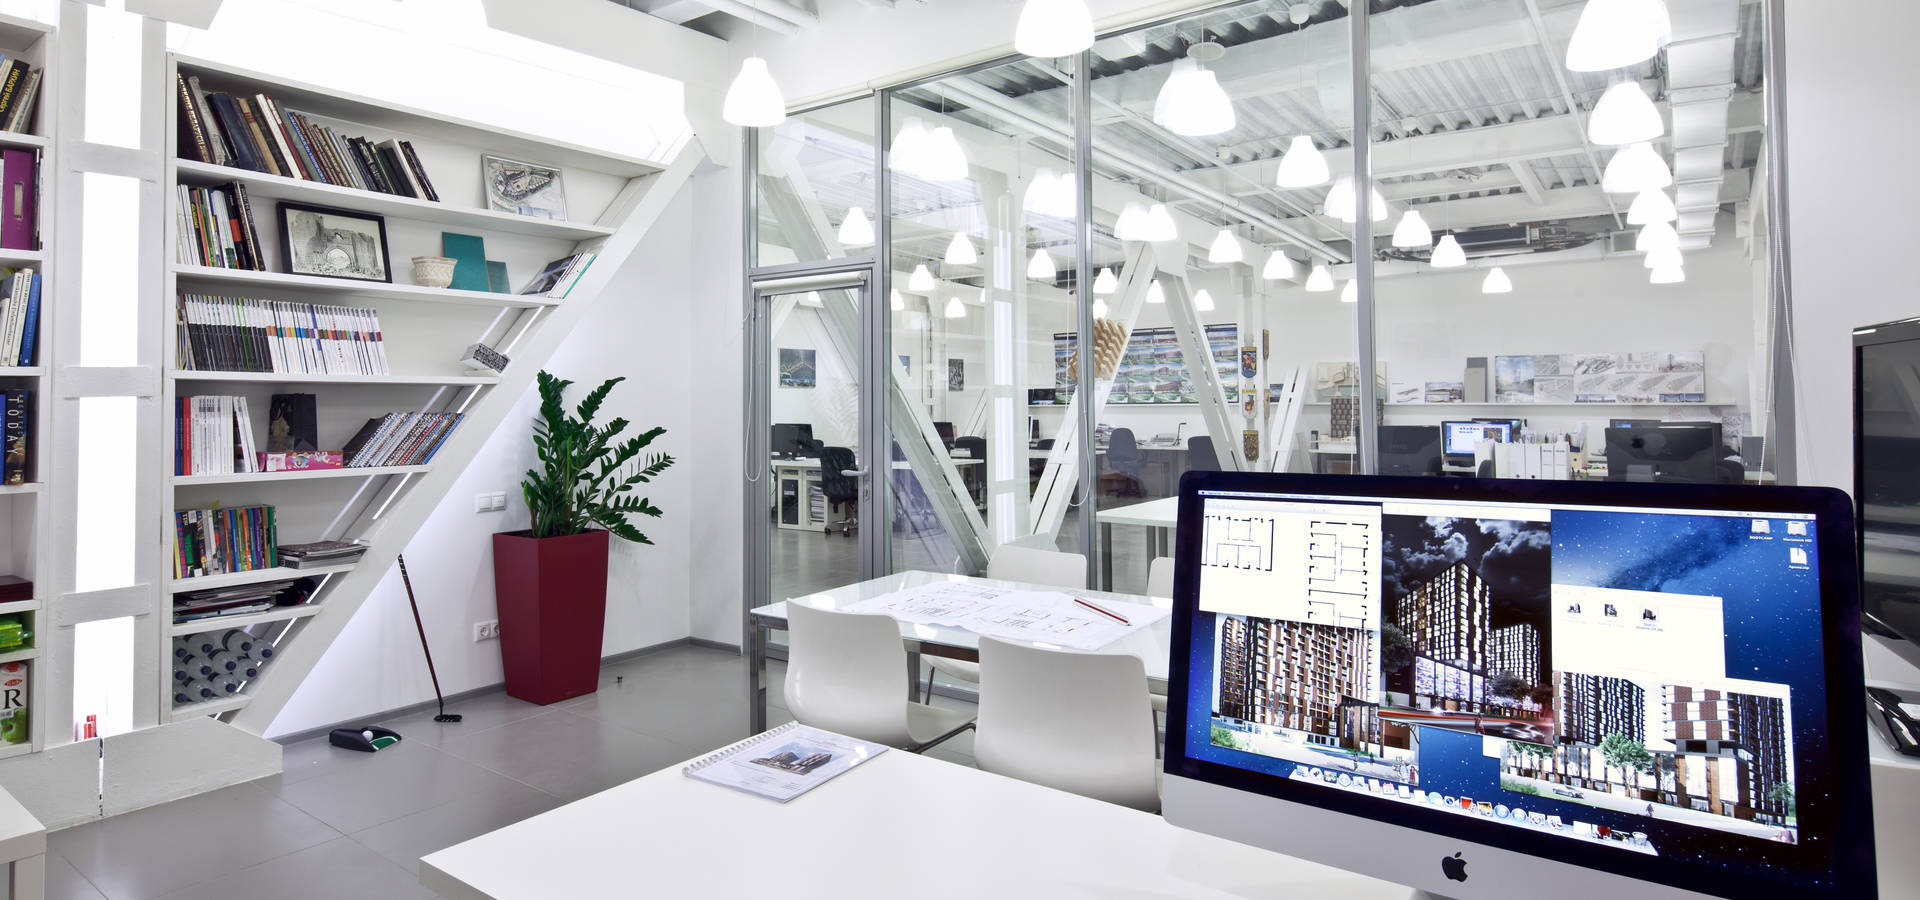 Организация рабочего пространства в офисе для архитекторов